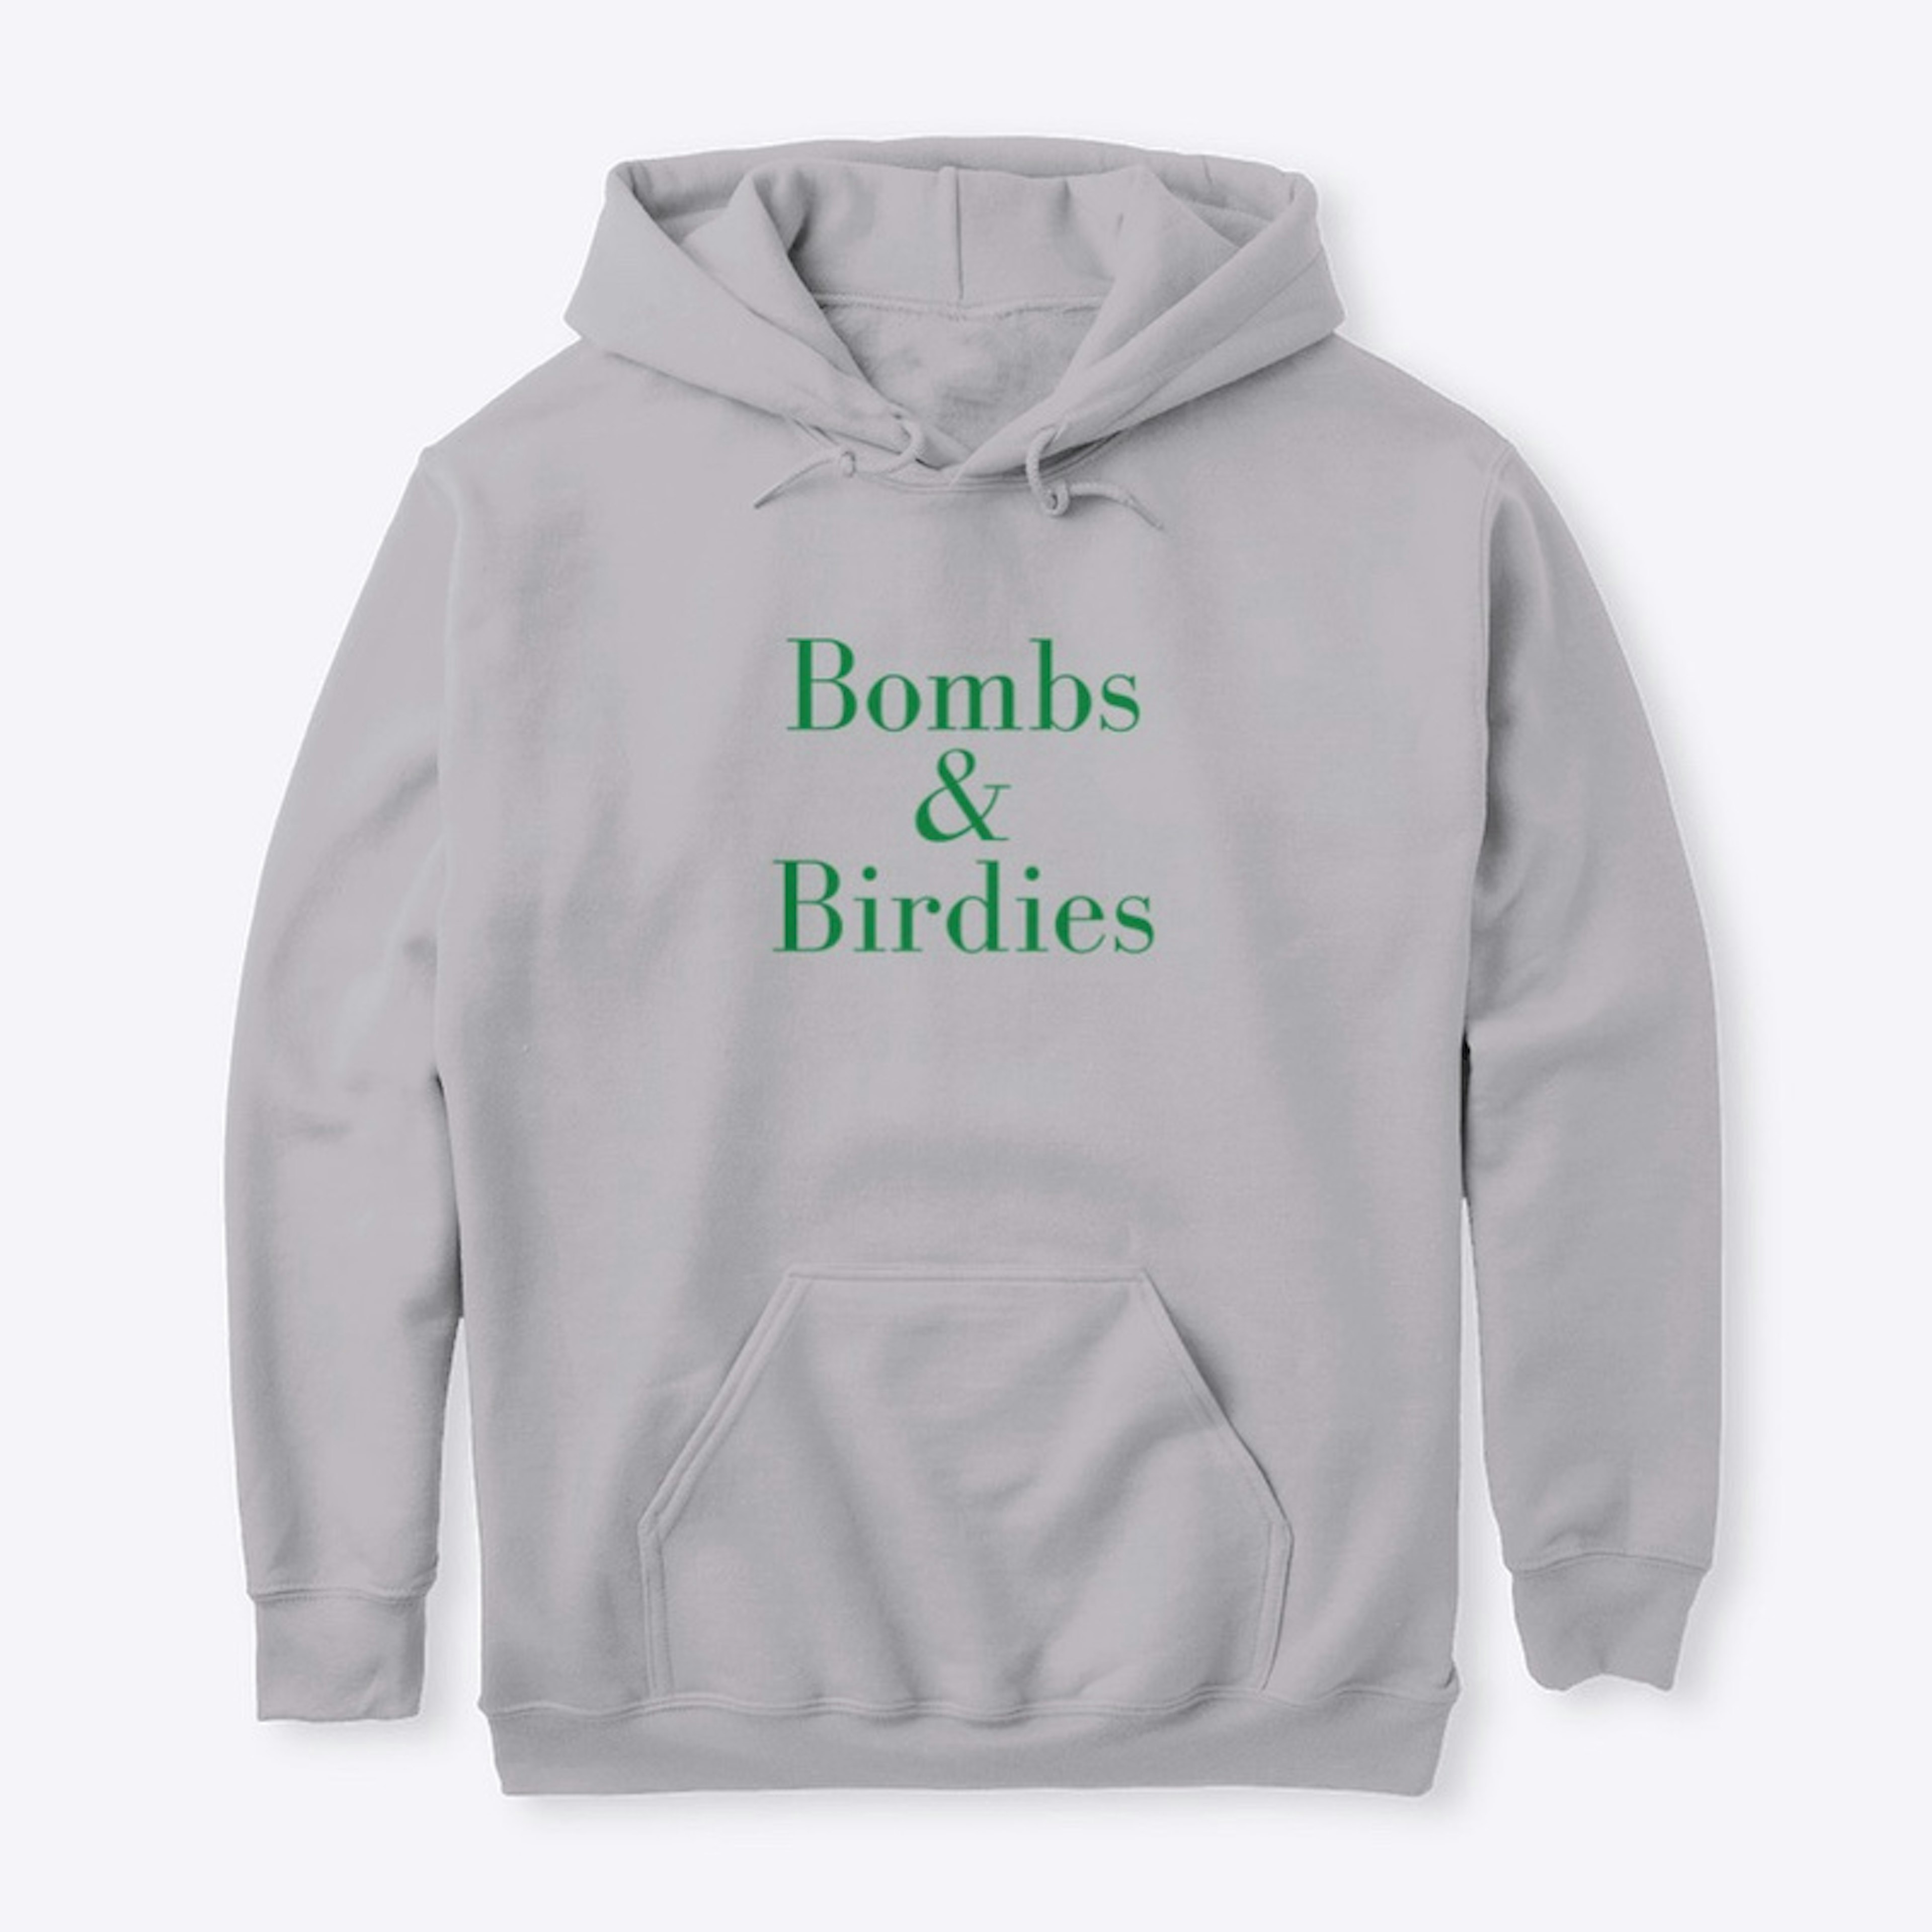 Bombs & Birdies - Green